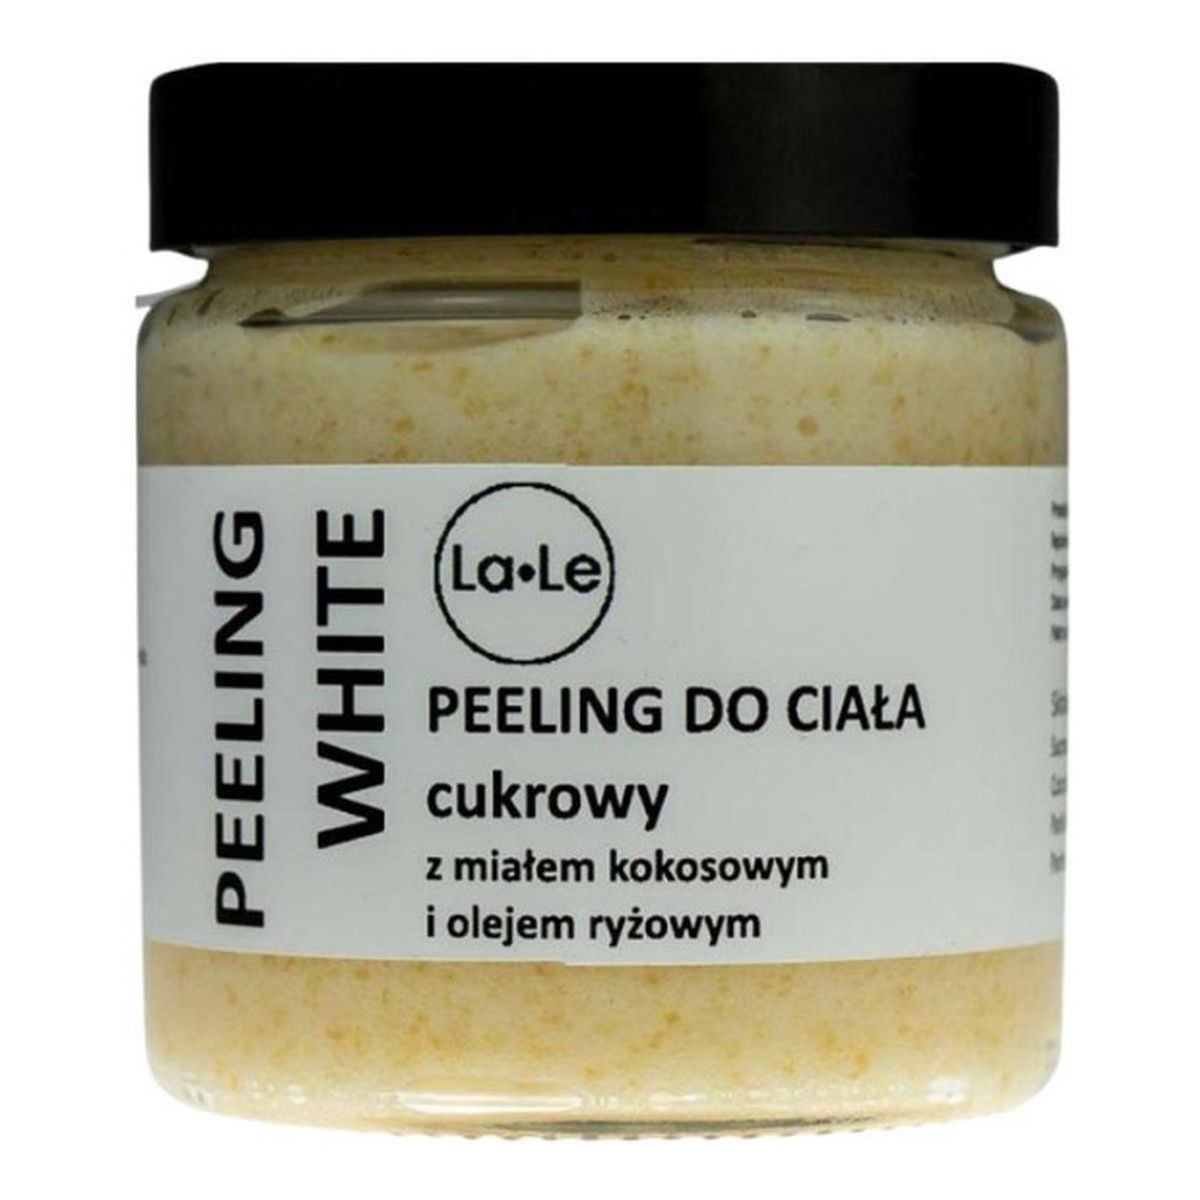 La-Le Peeling do ciała cukrowy - WHITE 120ml